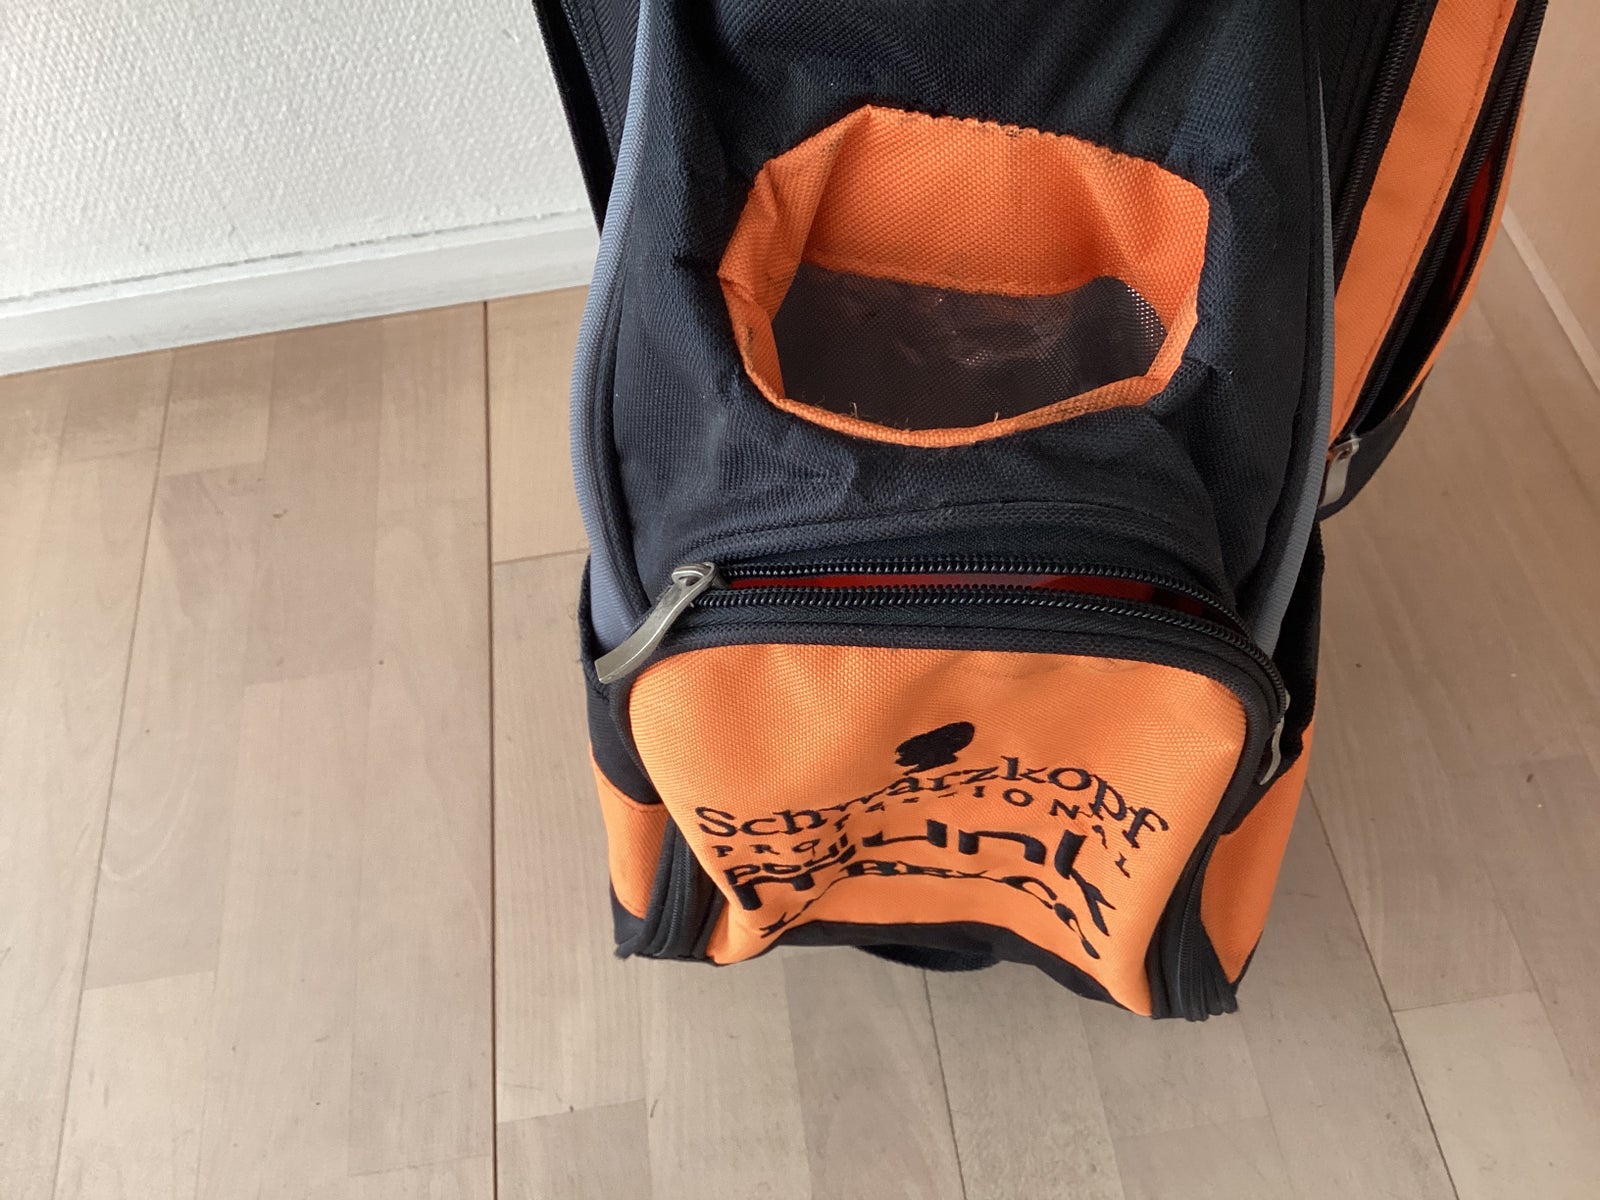 Golfbag, Schwartzkopff special edition